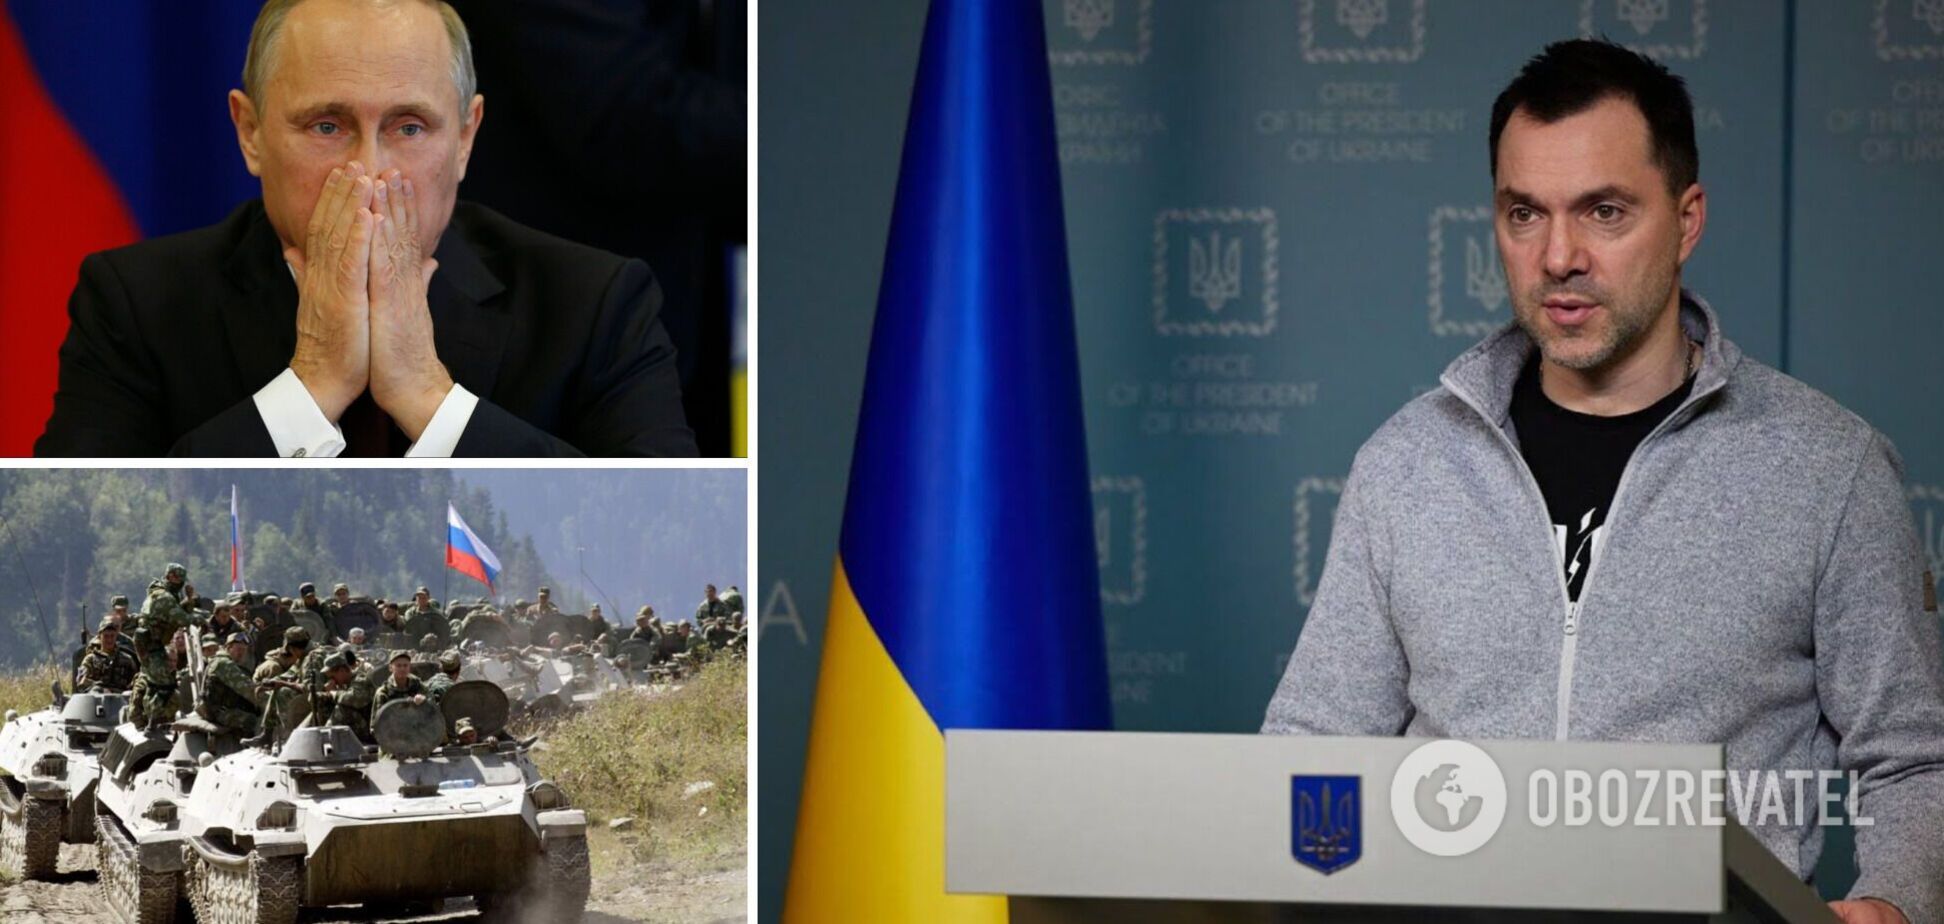 Арестович дал прогноз, что будет делать Путин после поражения в Украине